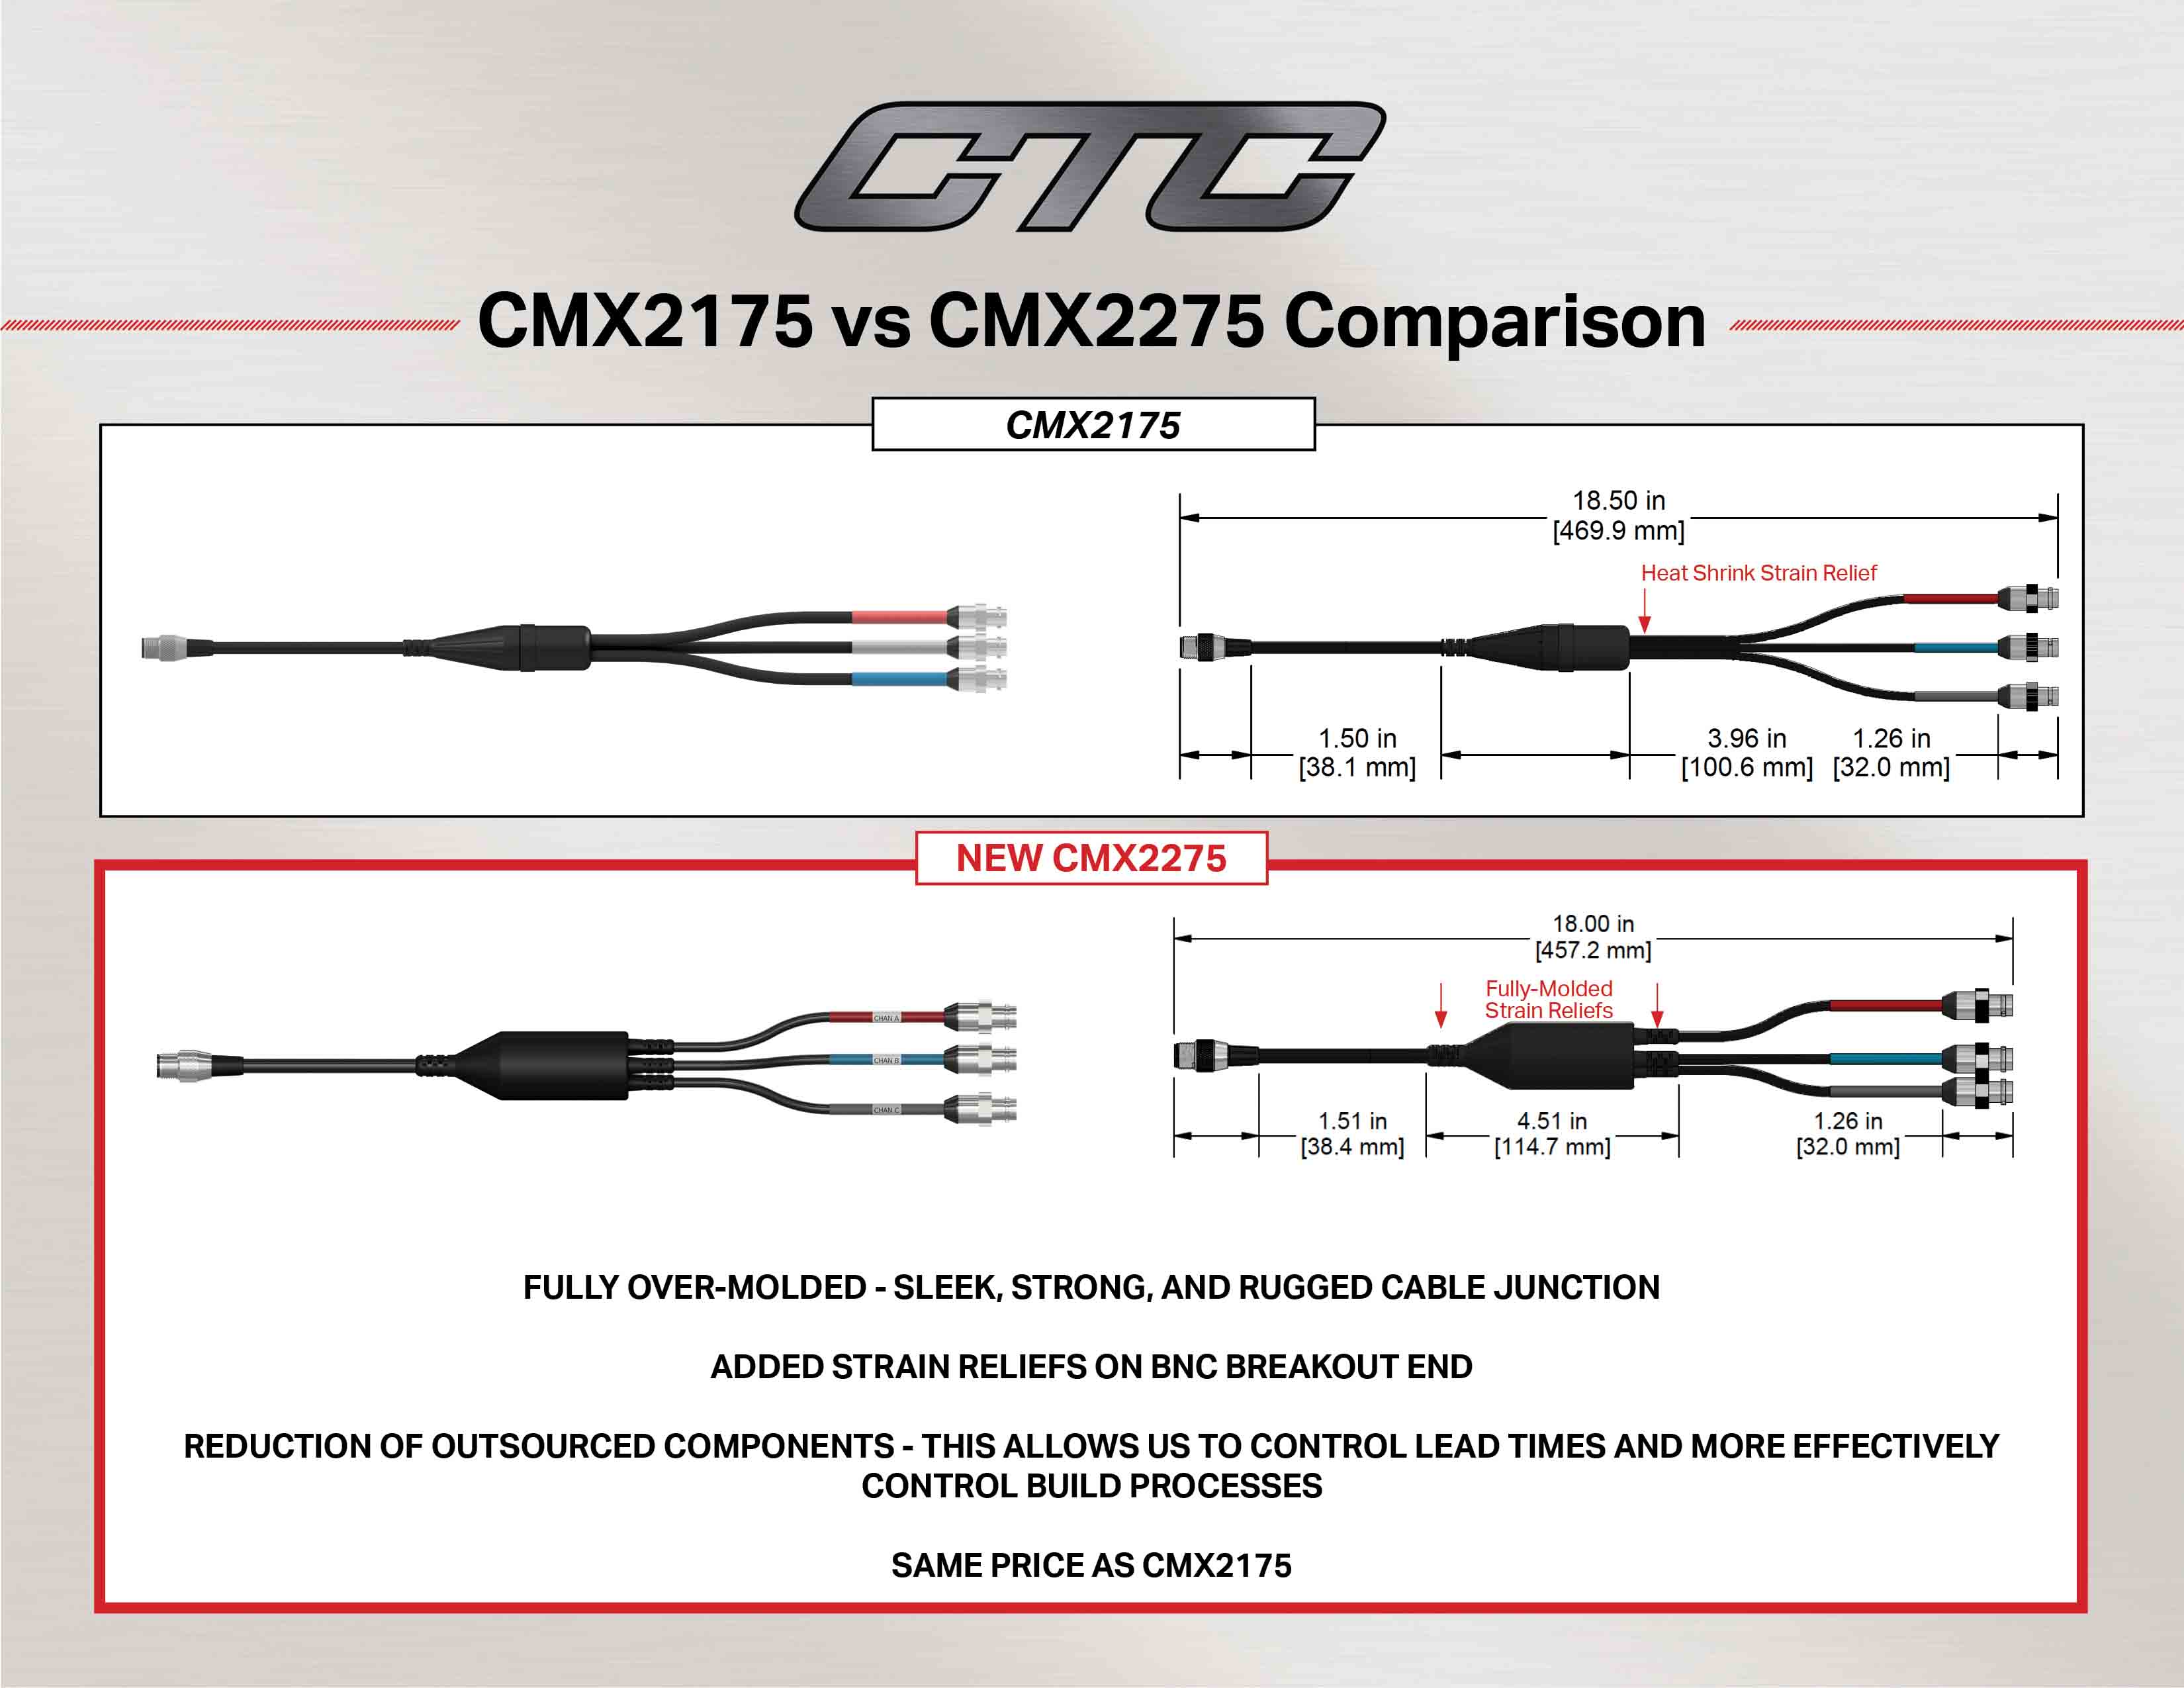 CMX2175 vs CMX2275 cable comparison diagram and measurements